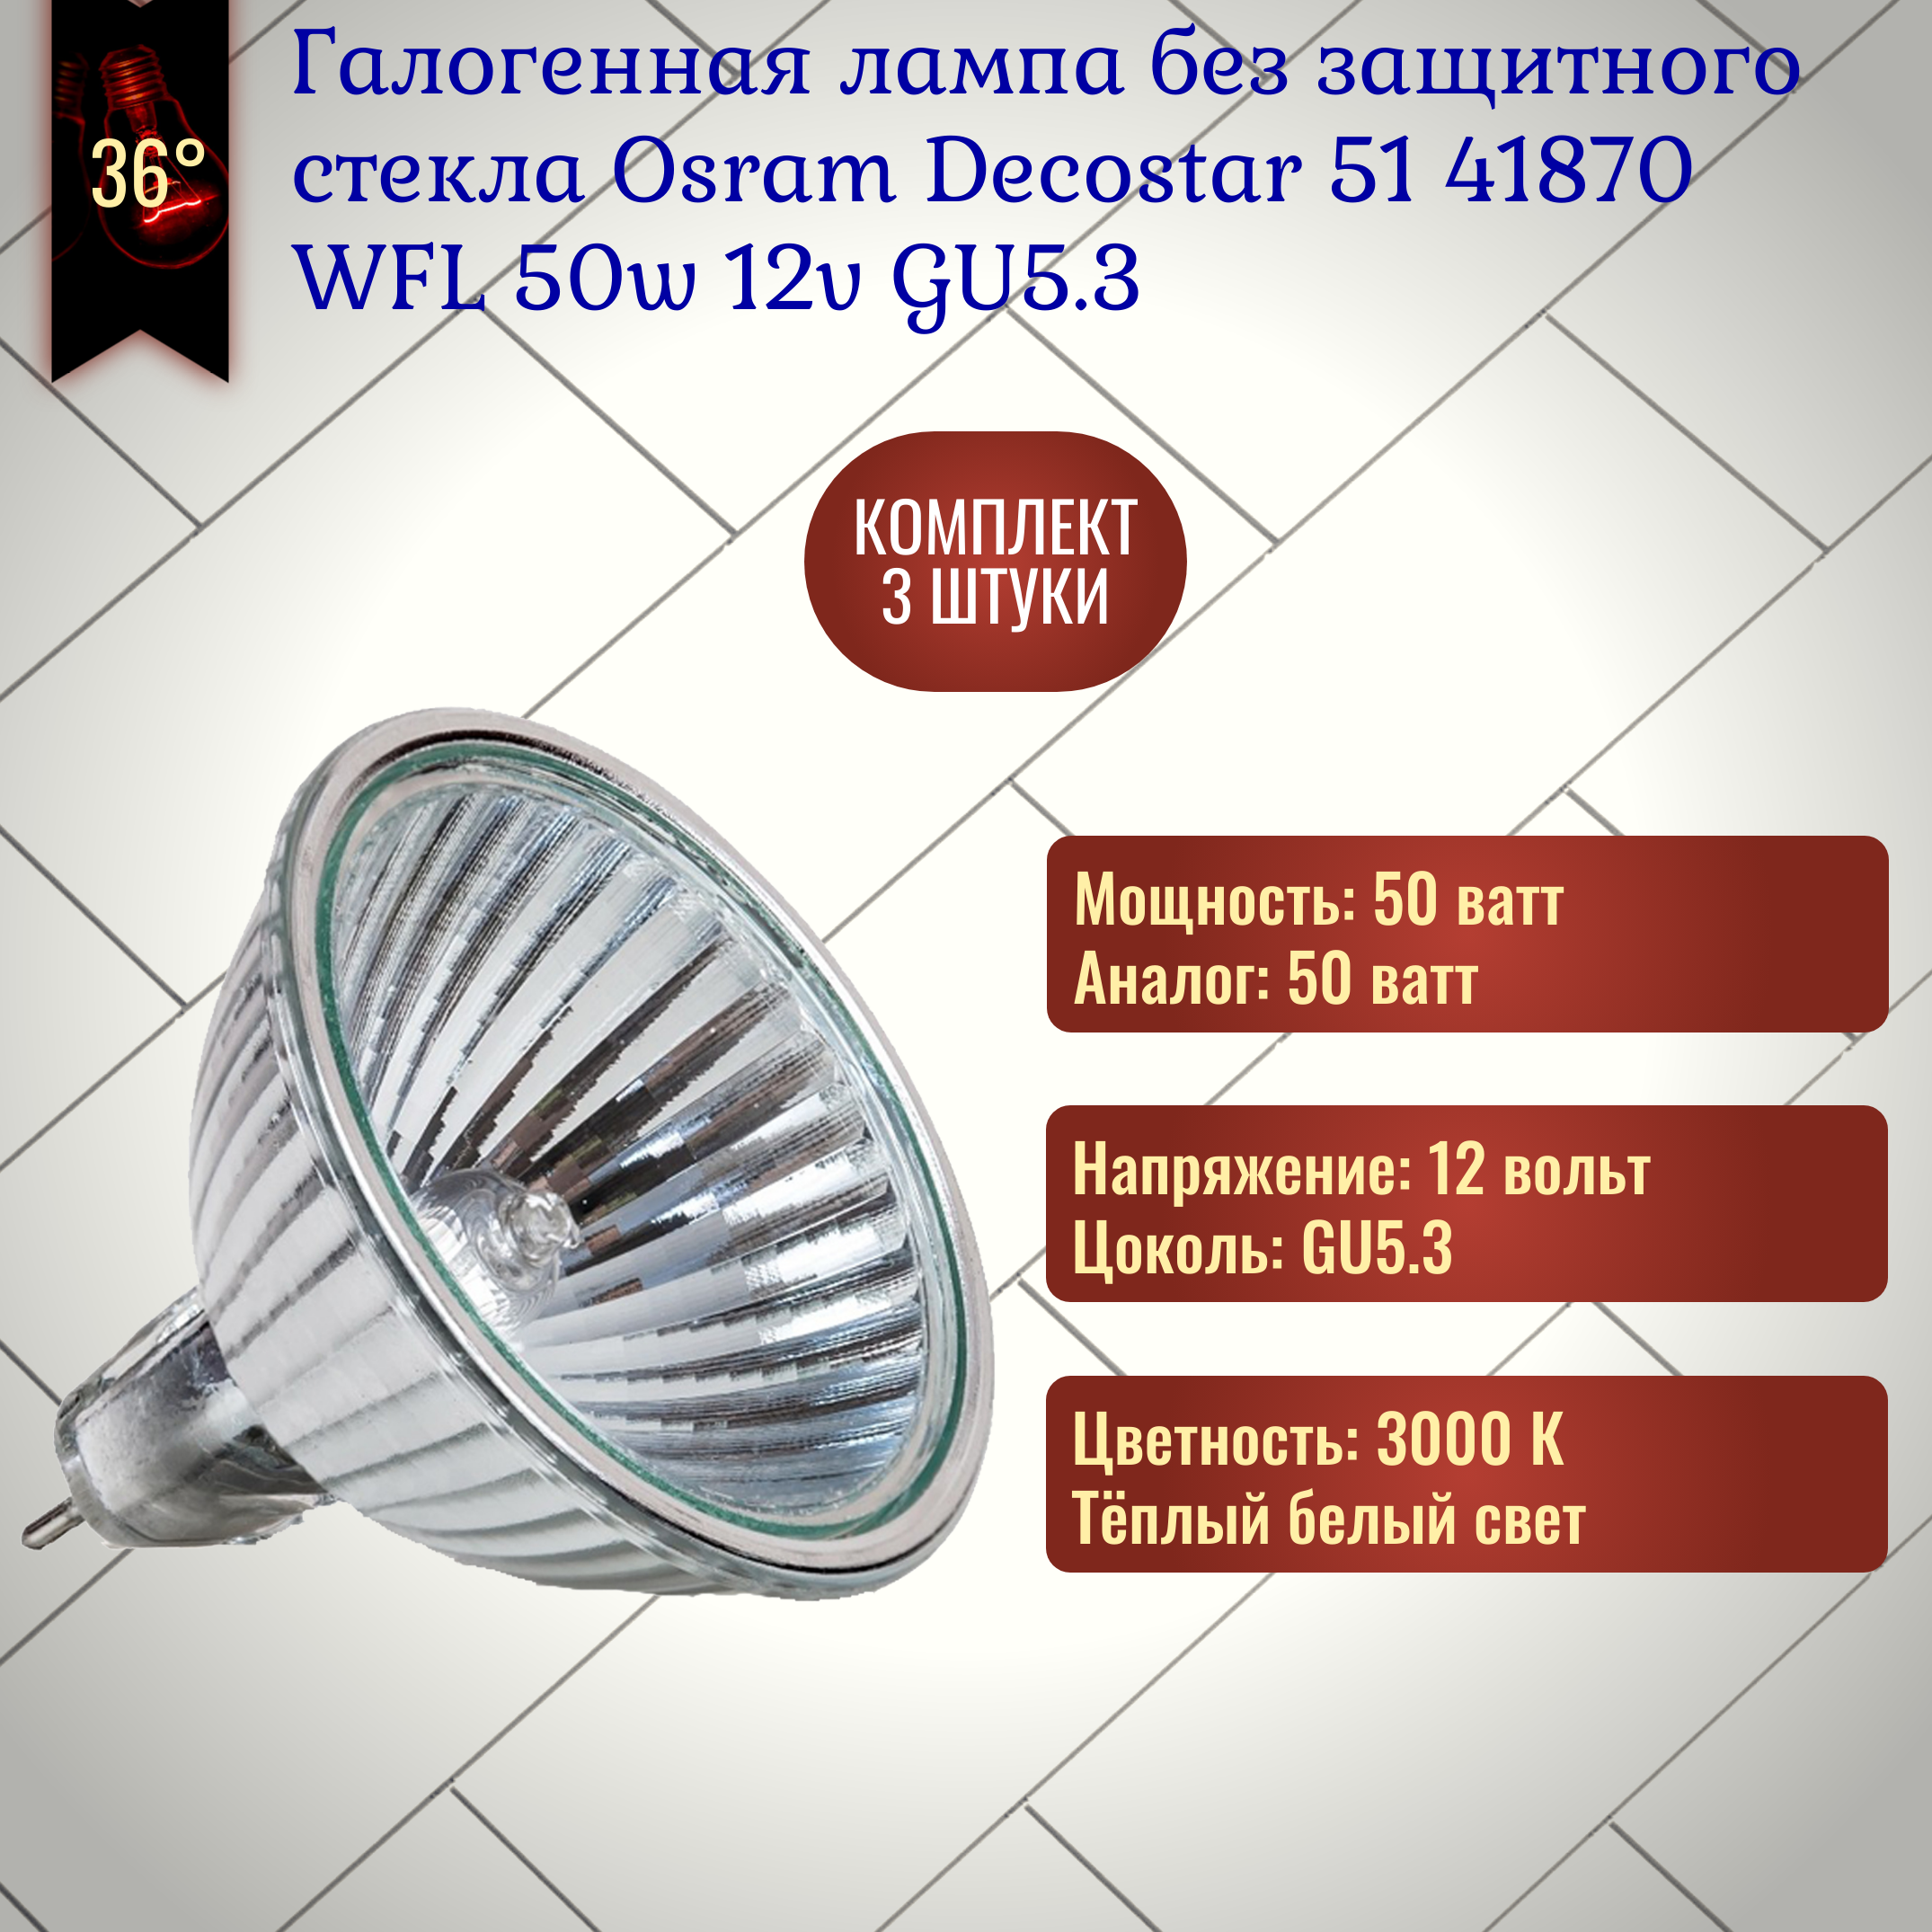 Лампочка без защитного стекла Osram Decostar 51 ALU 41870 WFL 50w 12v GU5.3 галогенная теплый белый свет / 3 штуки